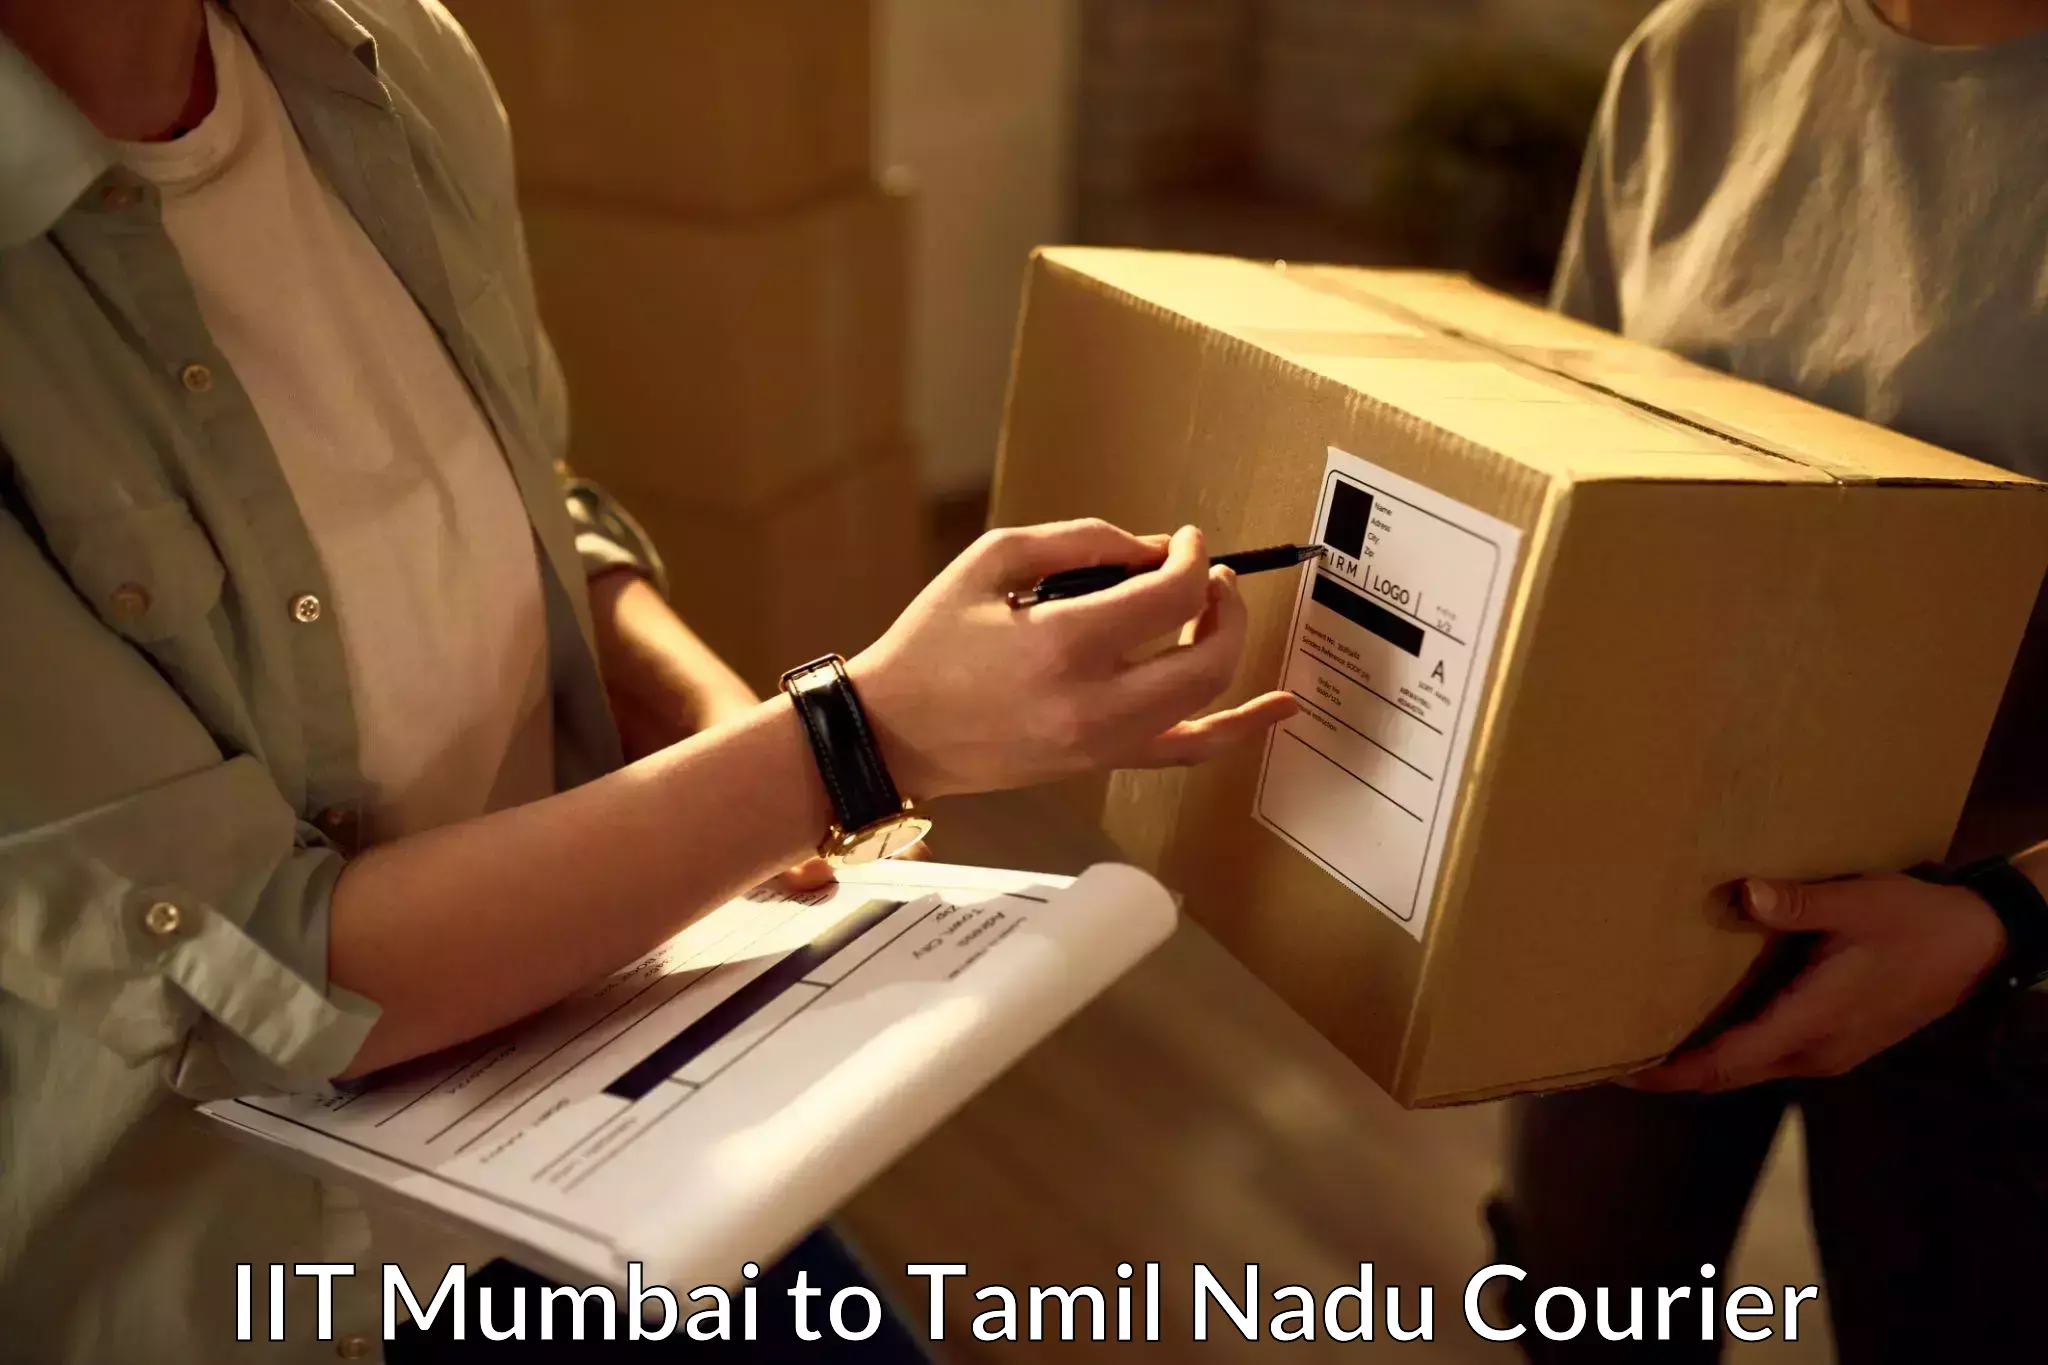 Express postal services in IIT Mumbai to Vedasandur